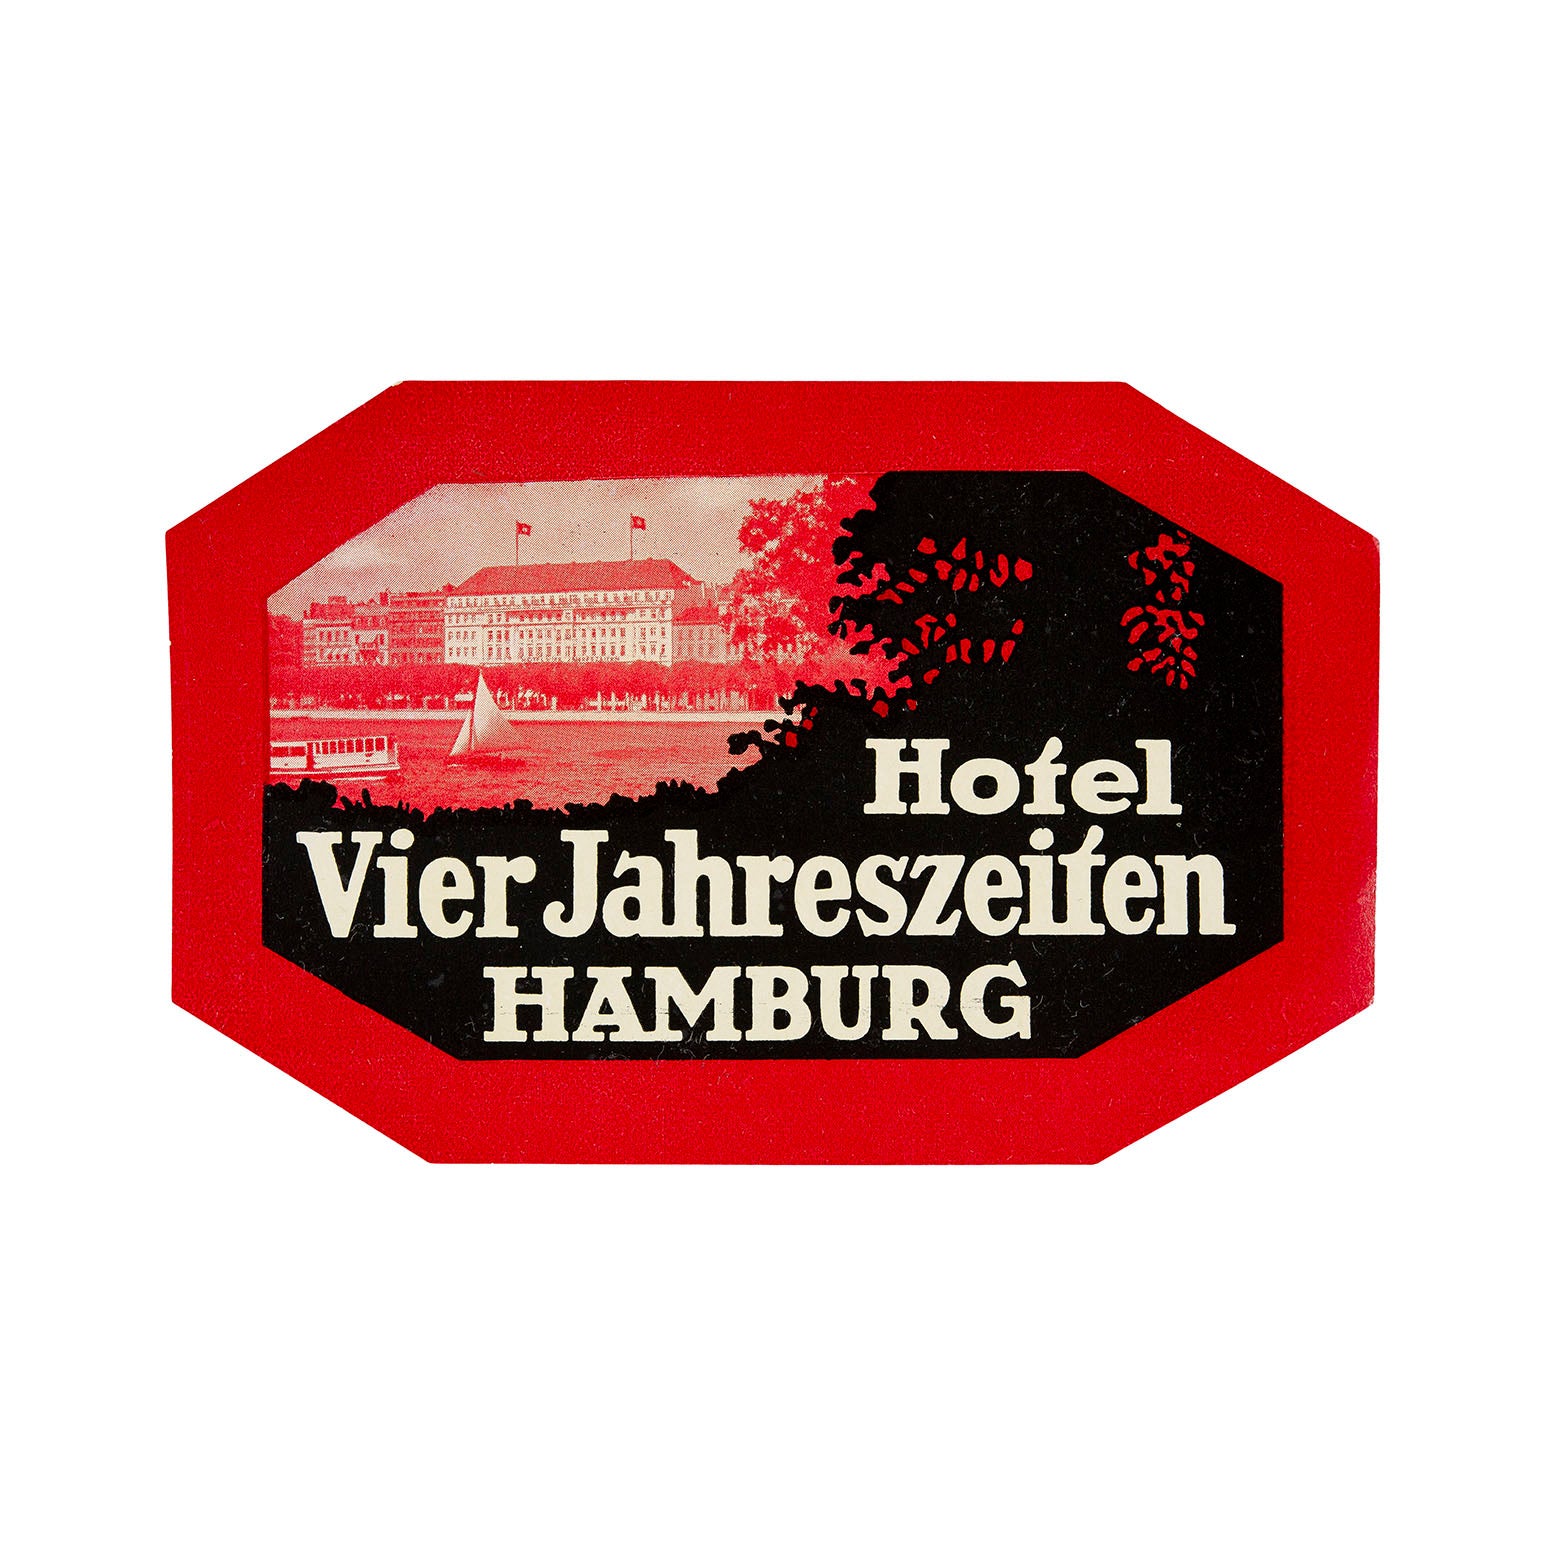 Hotel Vier Jahreszeiten, Hamburg (luggage label)